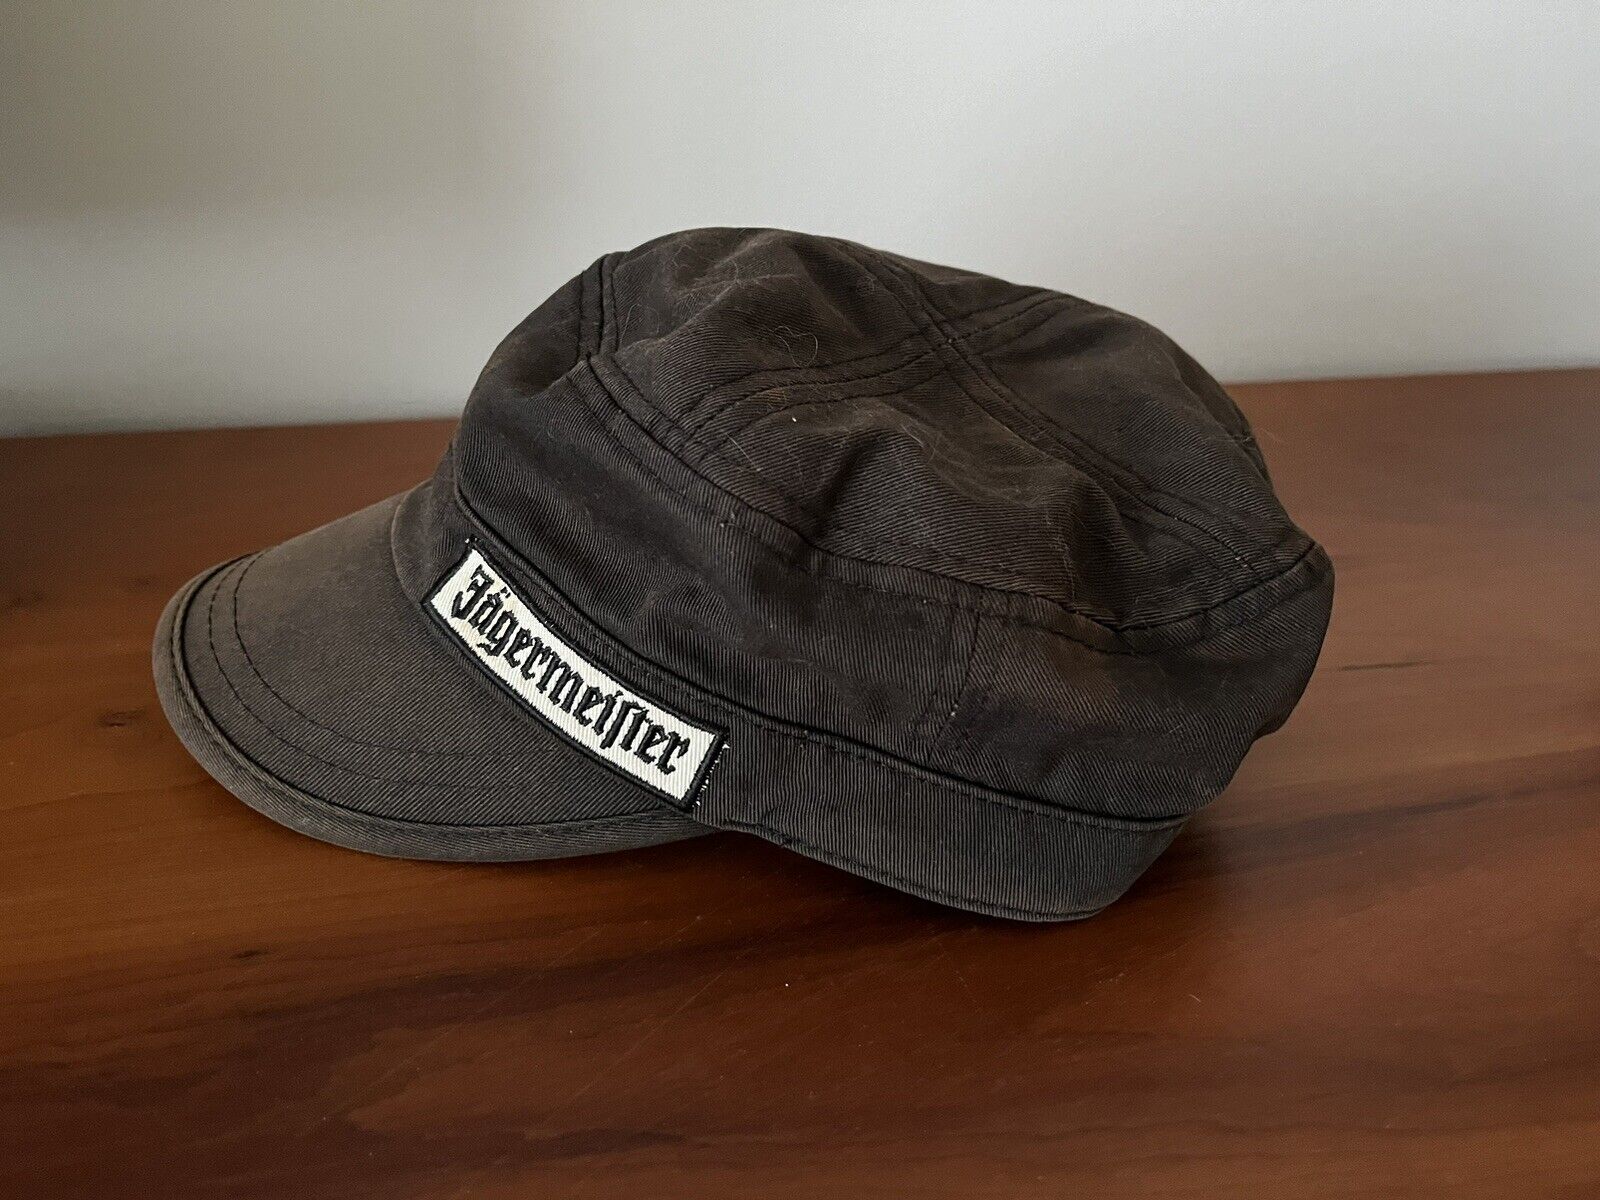 Jagermeister Vintage Cadet Style Brown Embroidered Adjustable Hat Cap